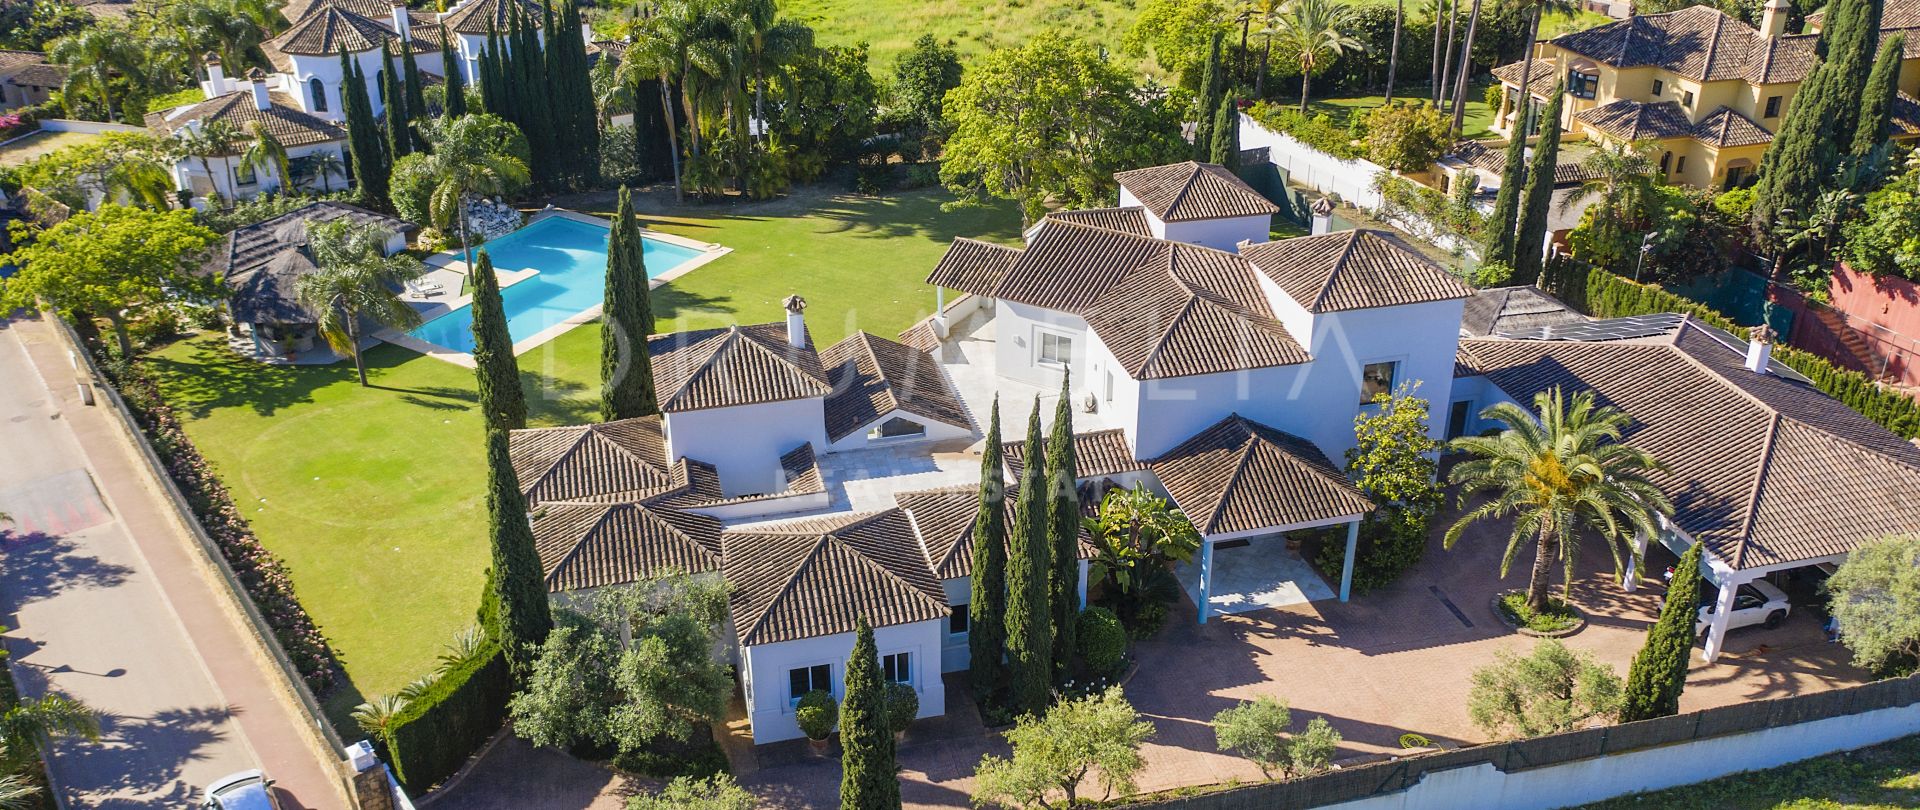 Prächtige mediterrane Luxusvilla mit großem Grundstück in der elitären Guadalmina Baja, San Pedro, Marbella.